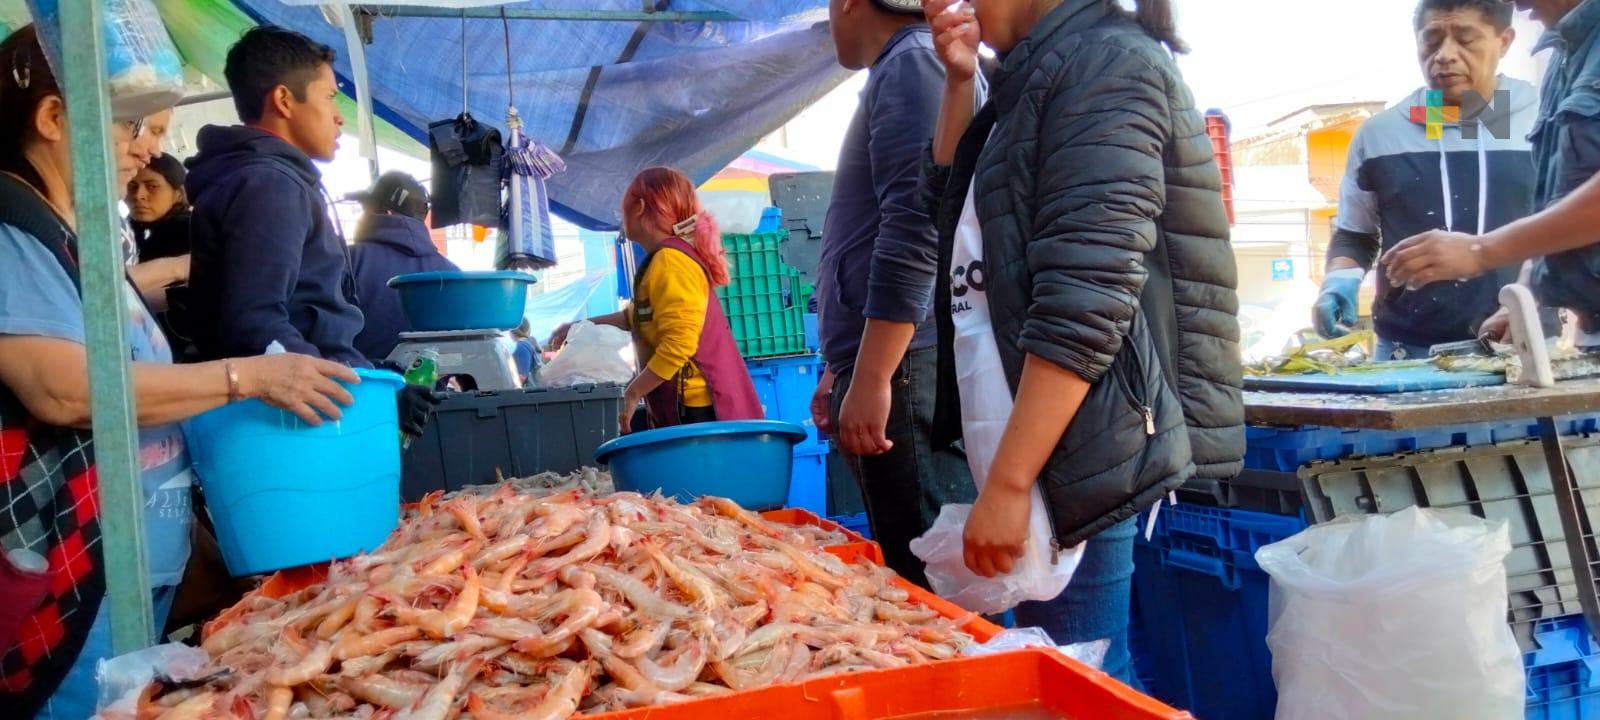 Por tradición, se consume pescado y marisco; iglesia recomienda no afectar  economía